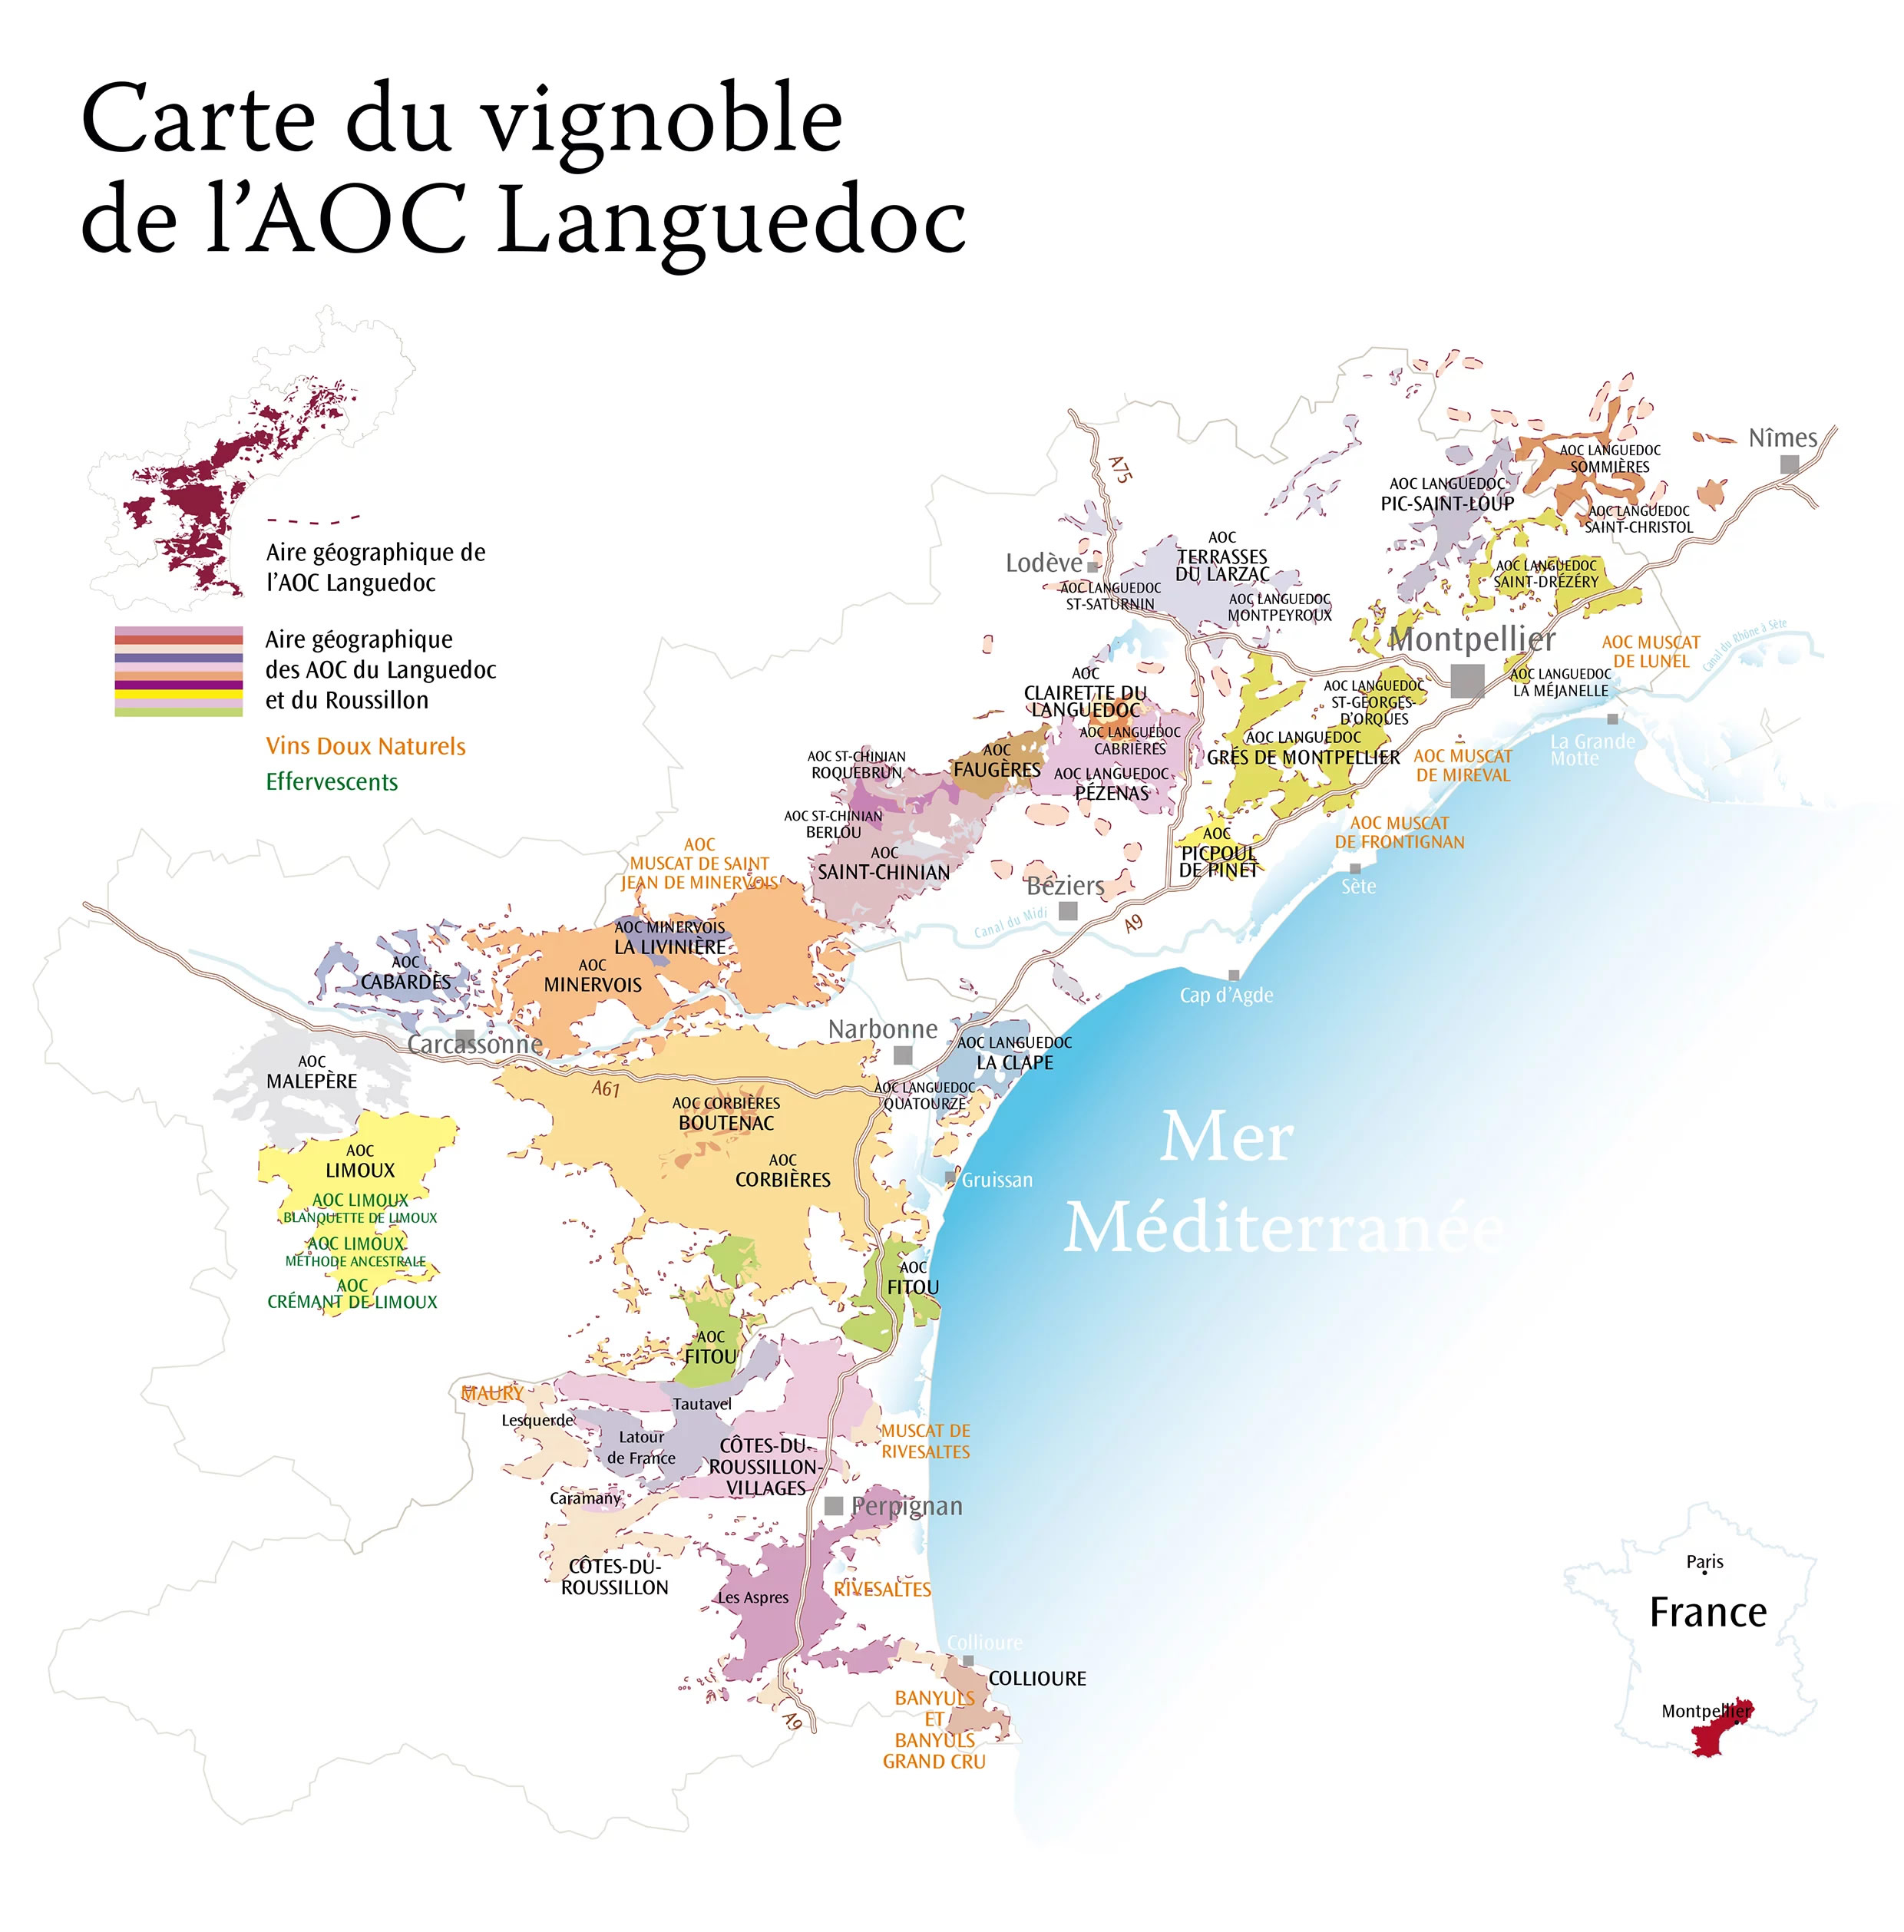 Le Languedoc : 3 raisons pour lesquelles c’est une grande région viticole